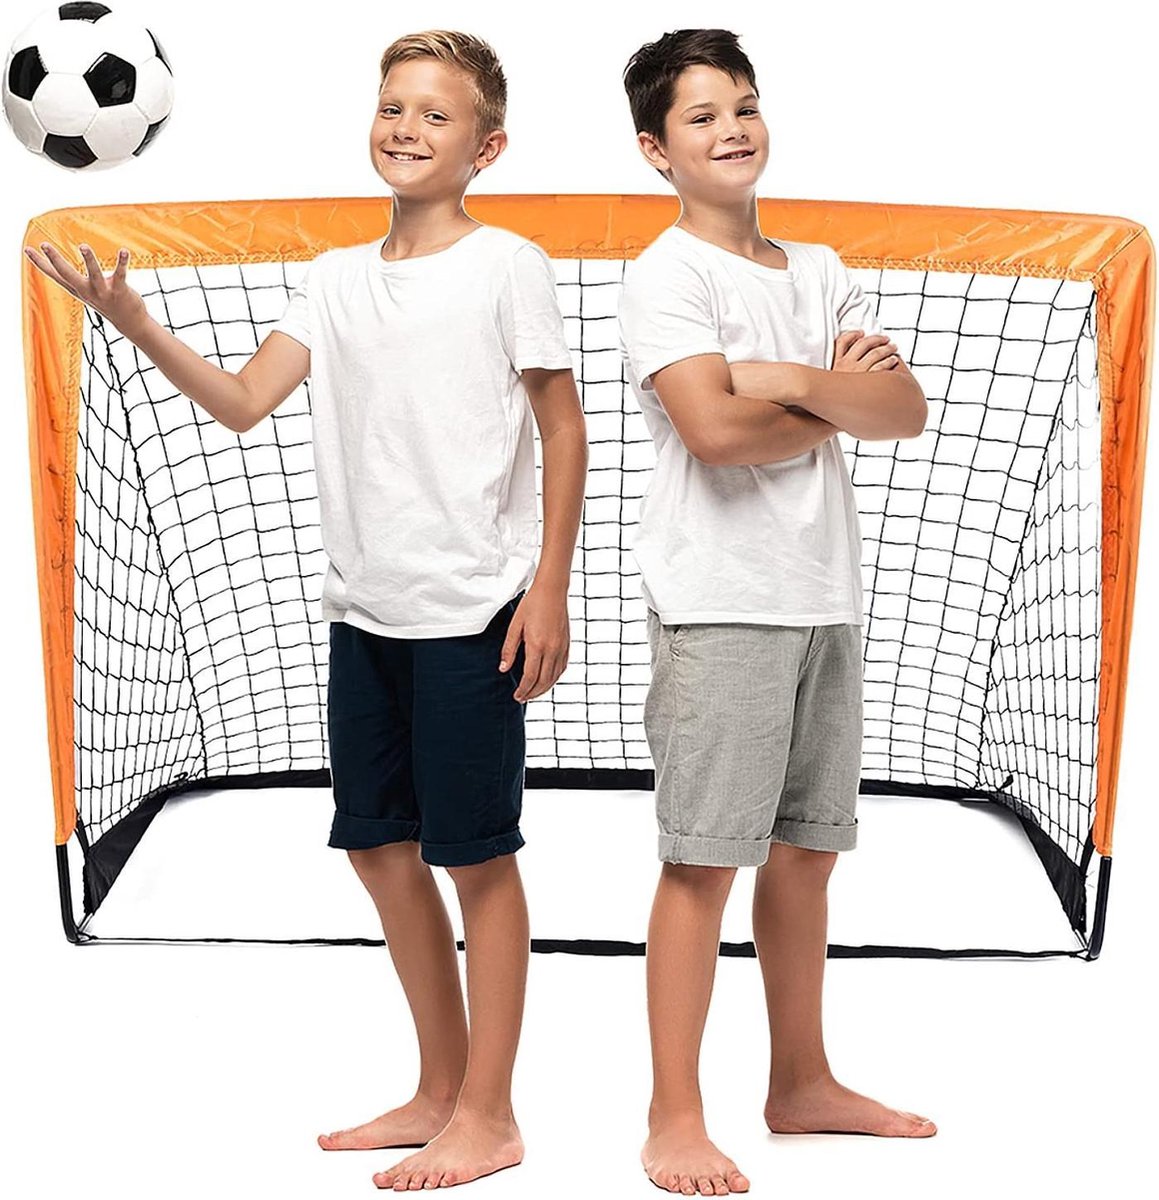 Voetballoël - Zinaps kinderen voetbaldoel, pop-up vouwdoel, voetbaldoelen voor tuin, kinderen voetbaldoel voor binnen buiten, voetbaldoel trainer met draagtas, 120 x 80 x 80 cm (WK 02128)